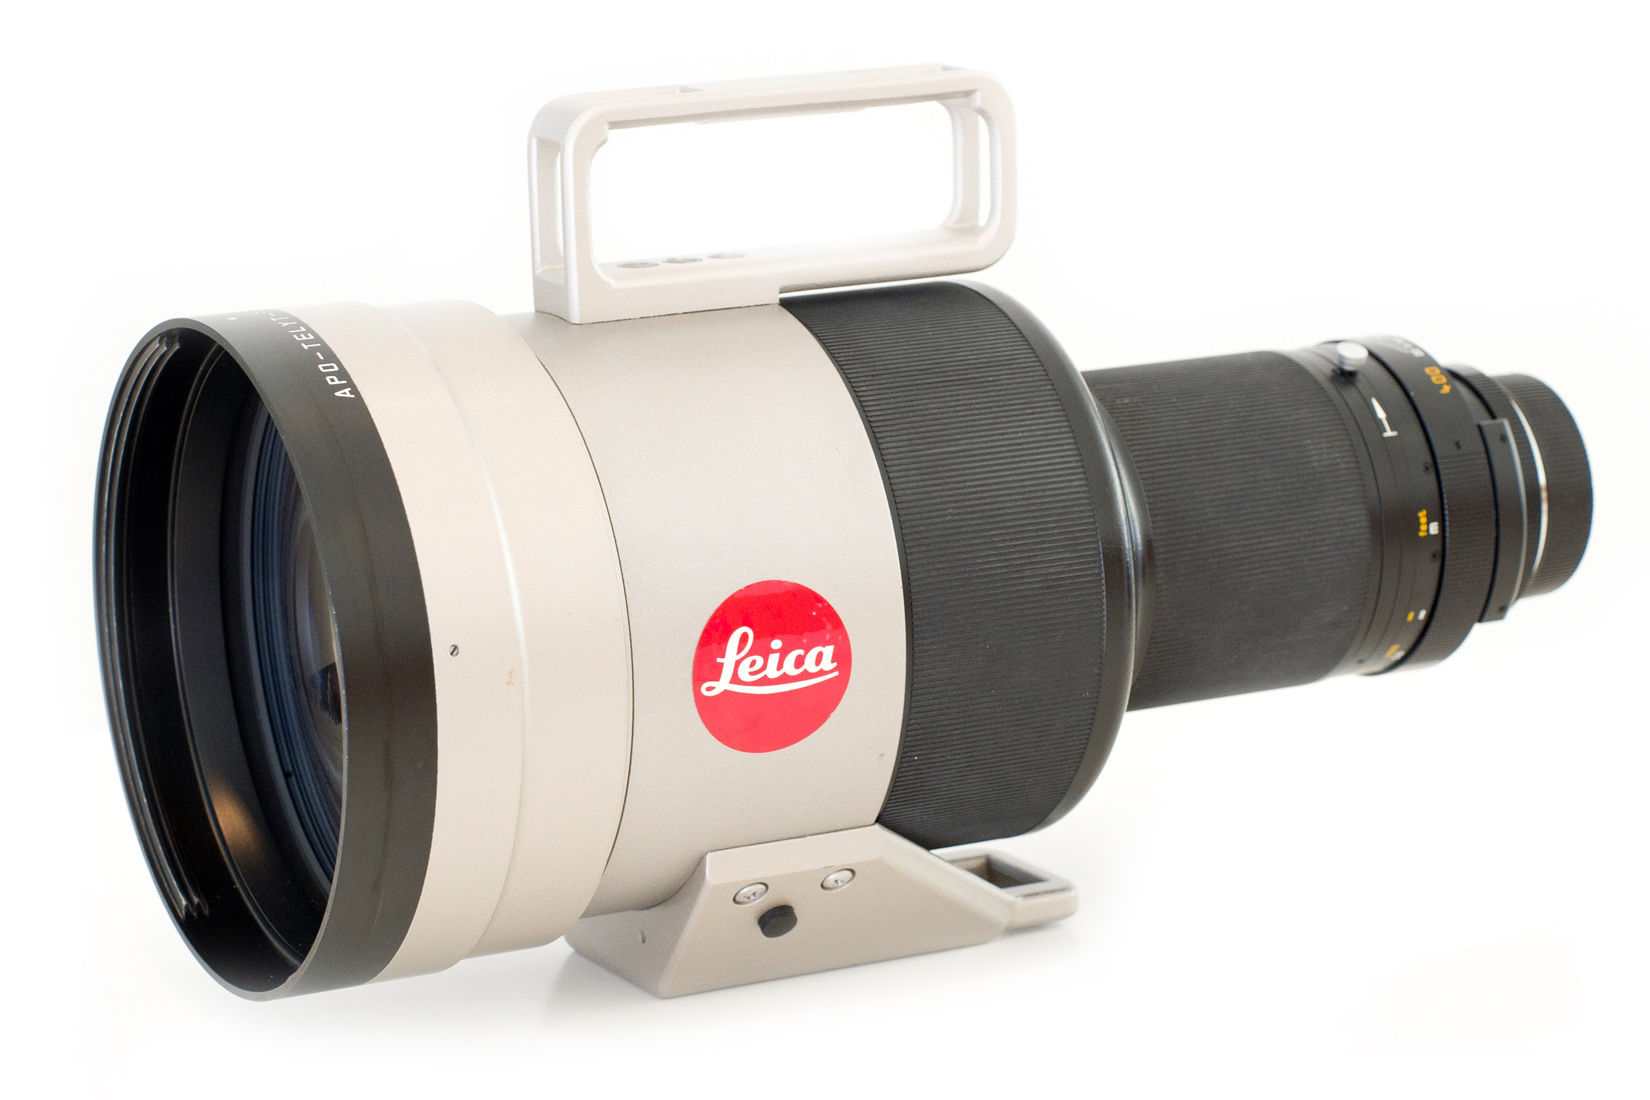 Leica APO-Telyt-R 1:2,8/400mm